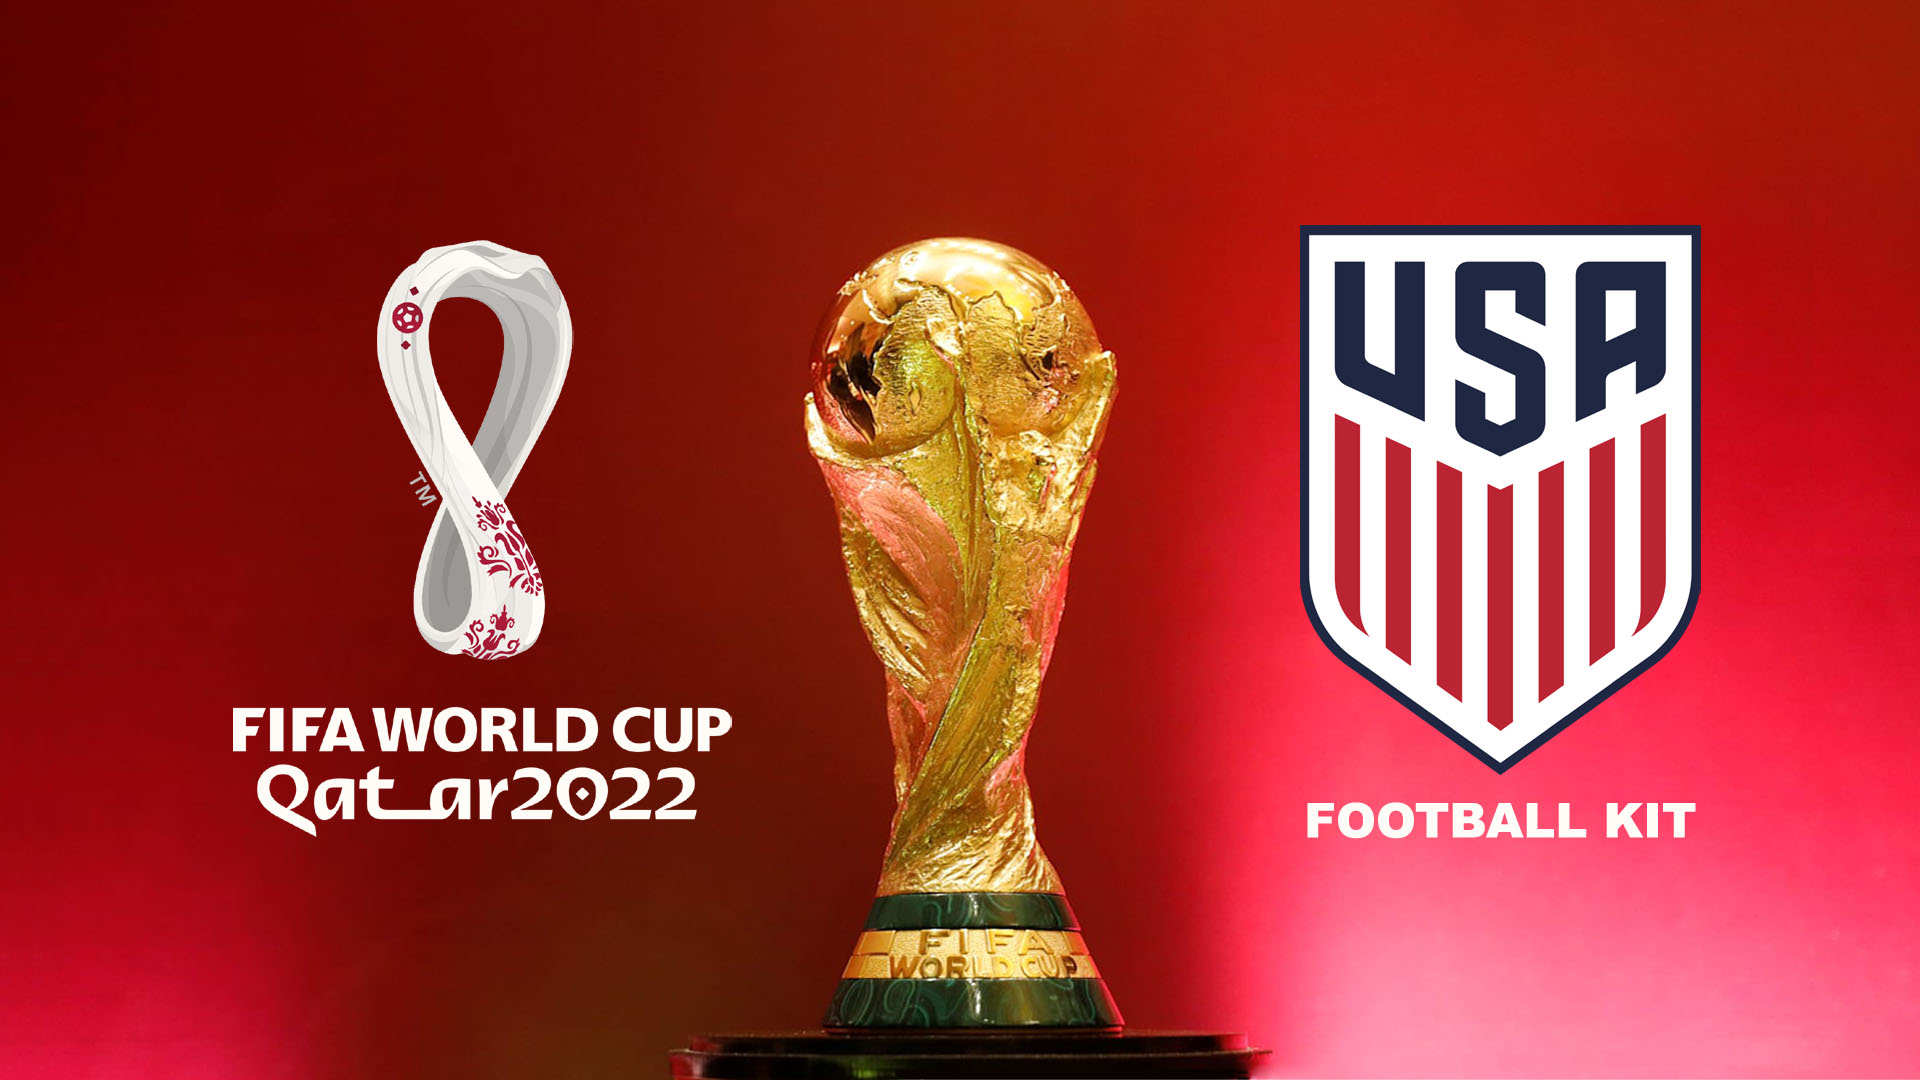 USA Kit World Cup 2022